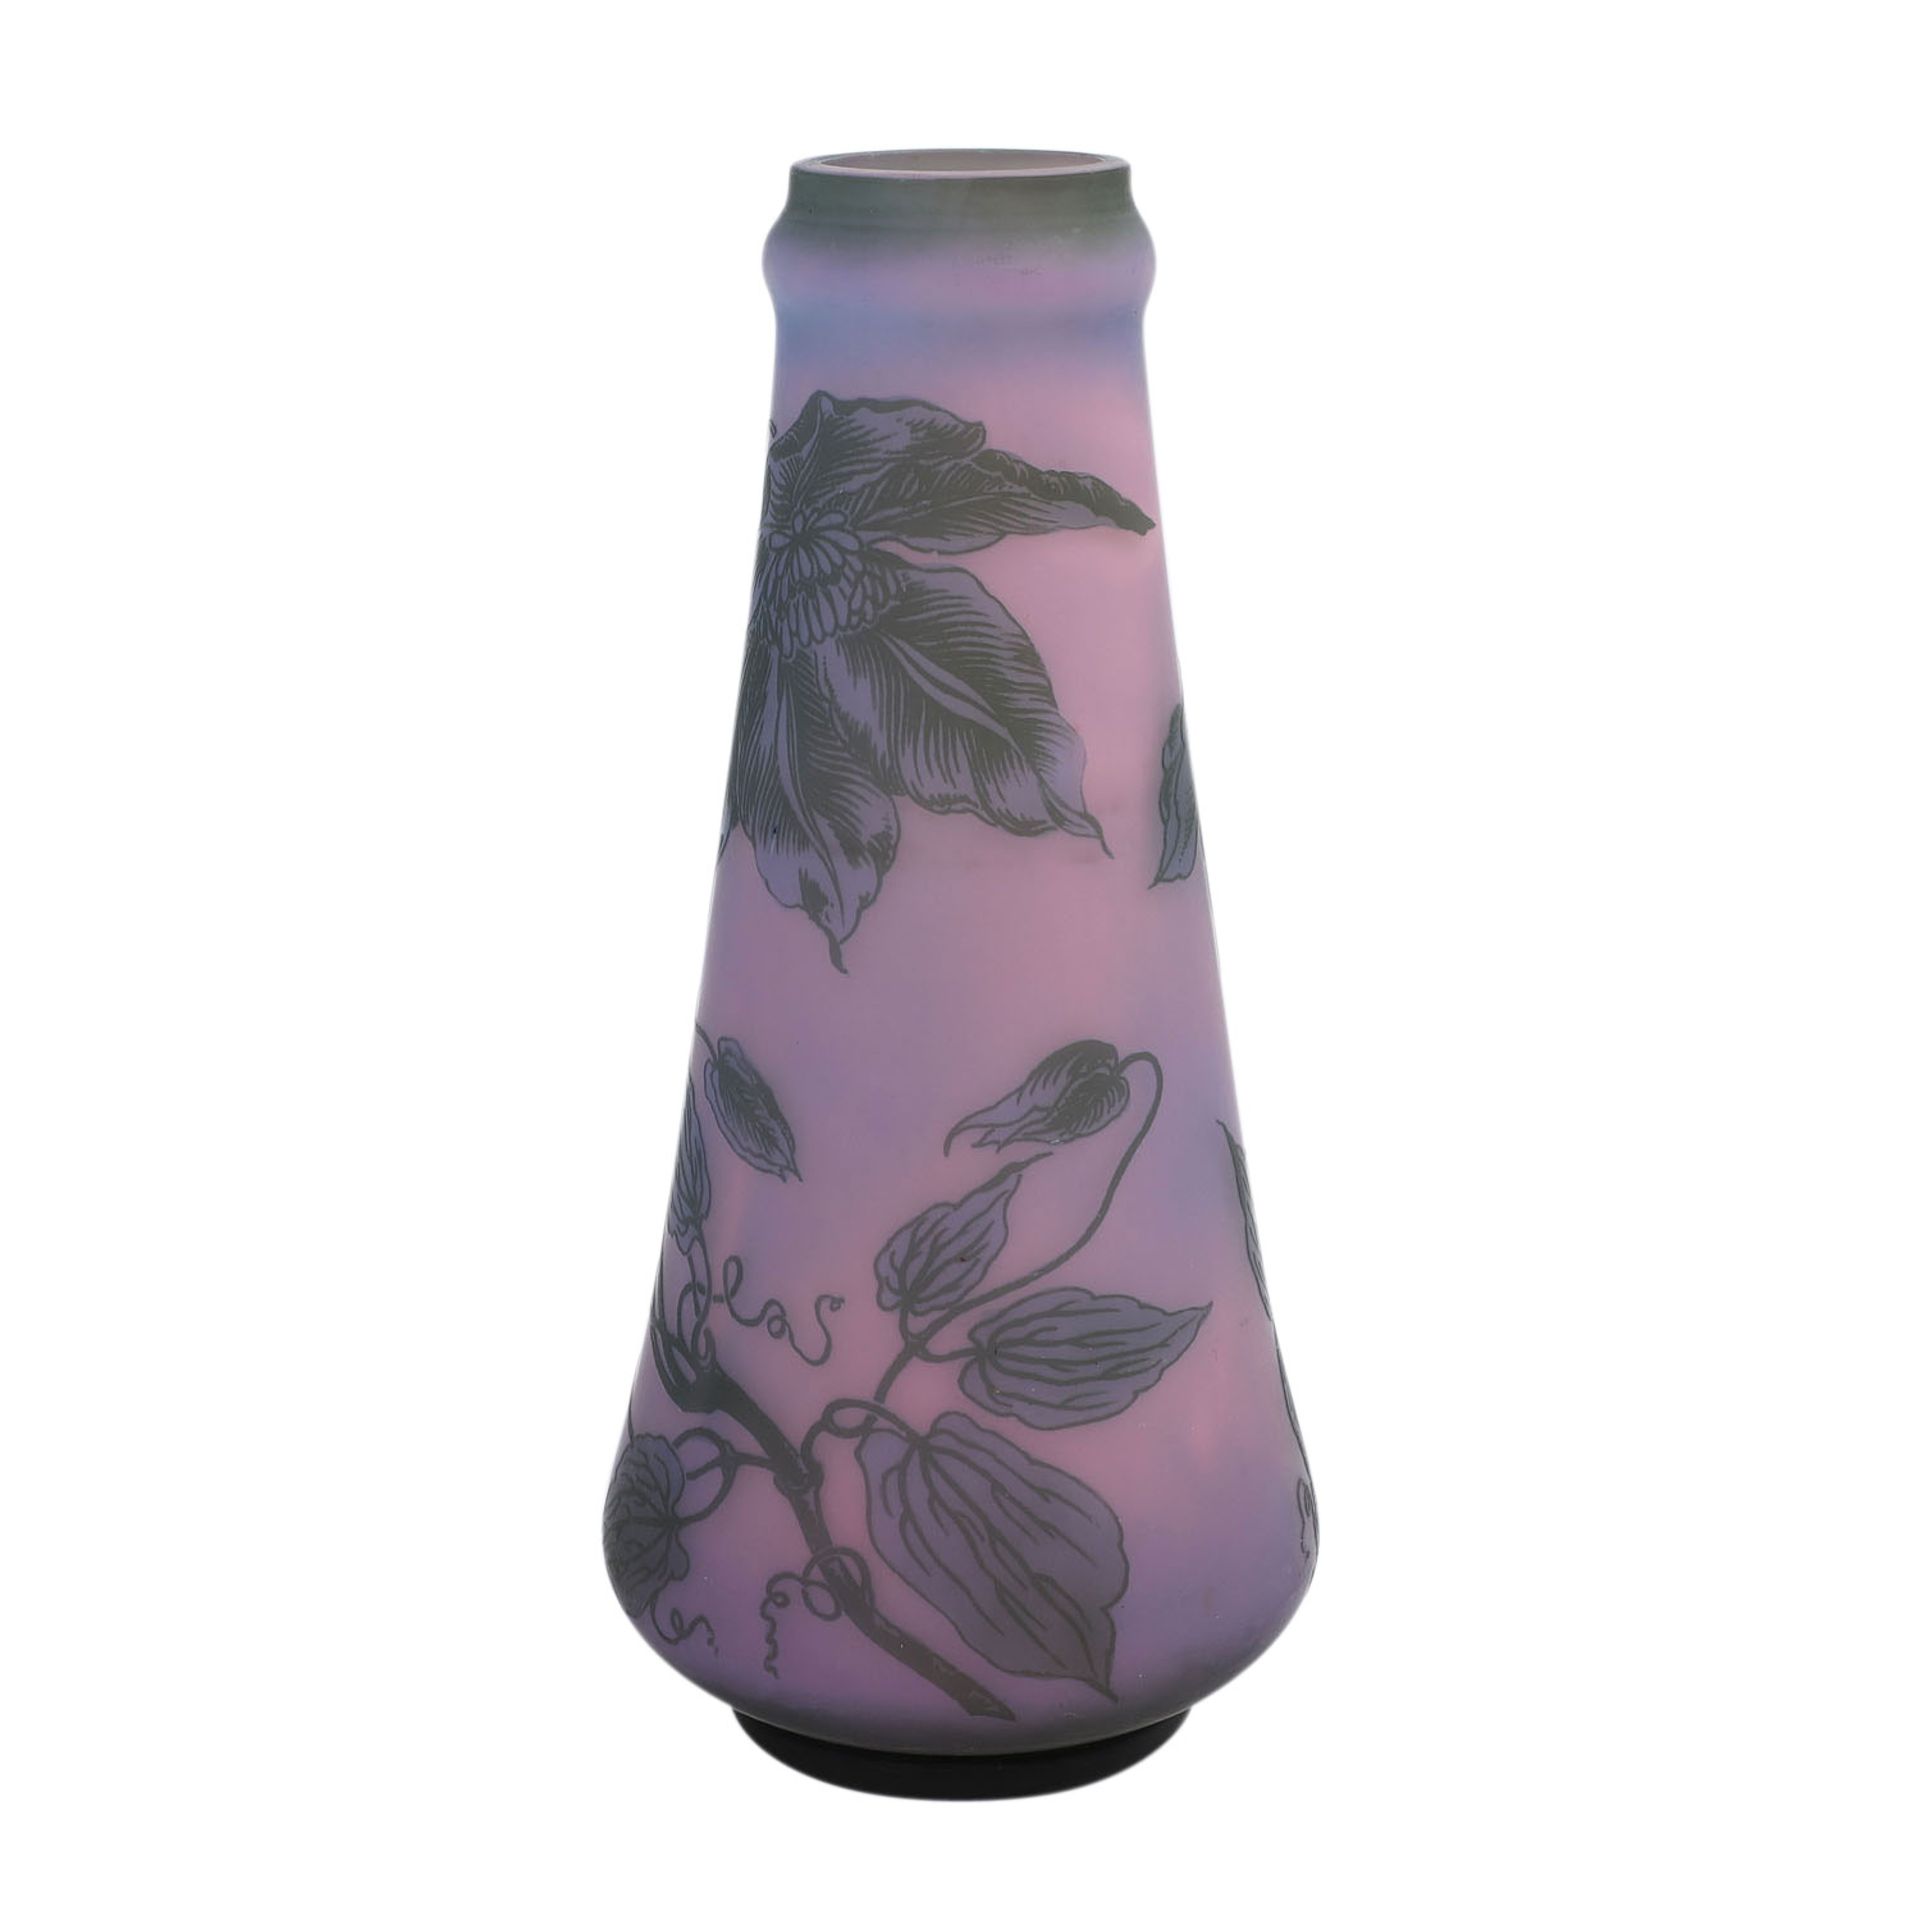 Vase 'Clematis', 20. Jh..Keulenförmige Vase, überfangen, rosa, lila, grau, mit einem Dekor von - Image 2 of 4